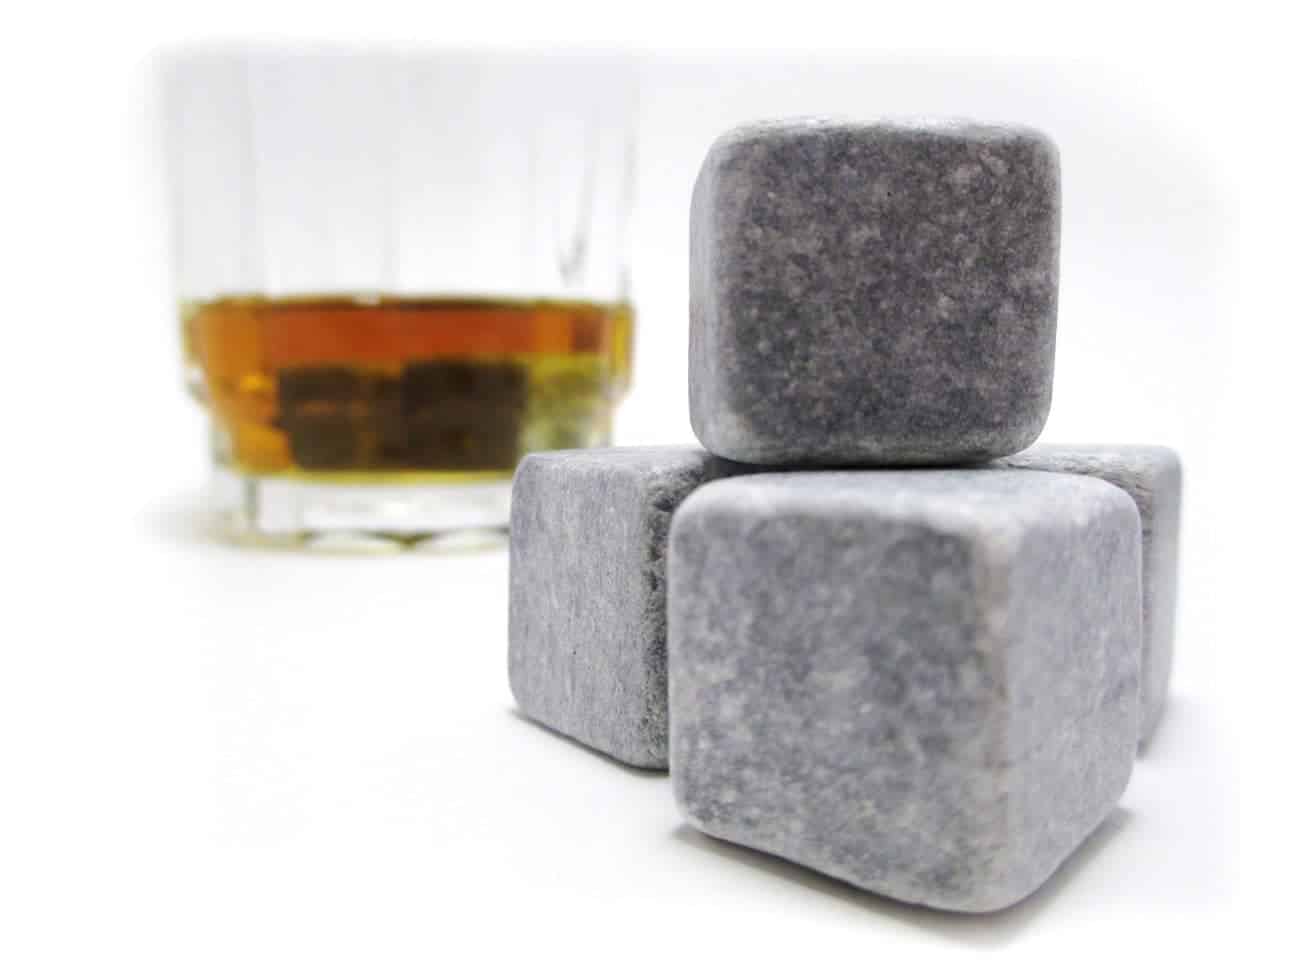 whiskey stones kohls